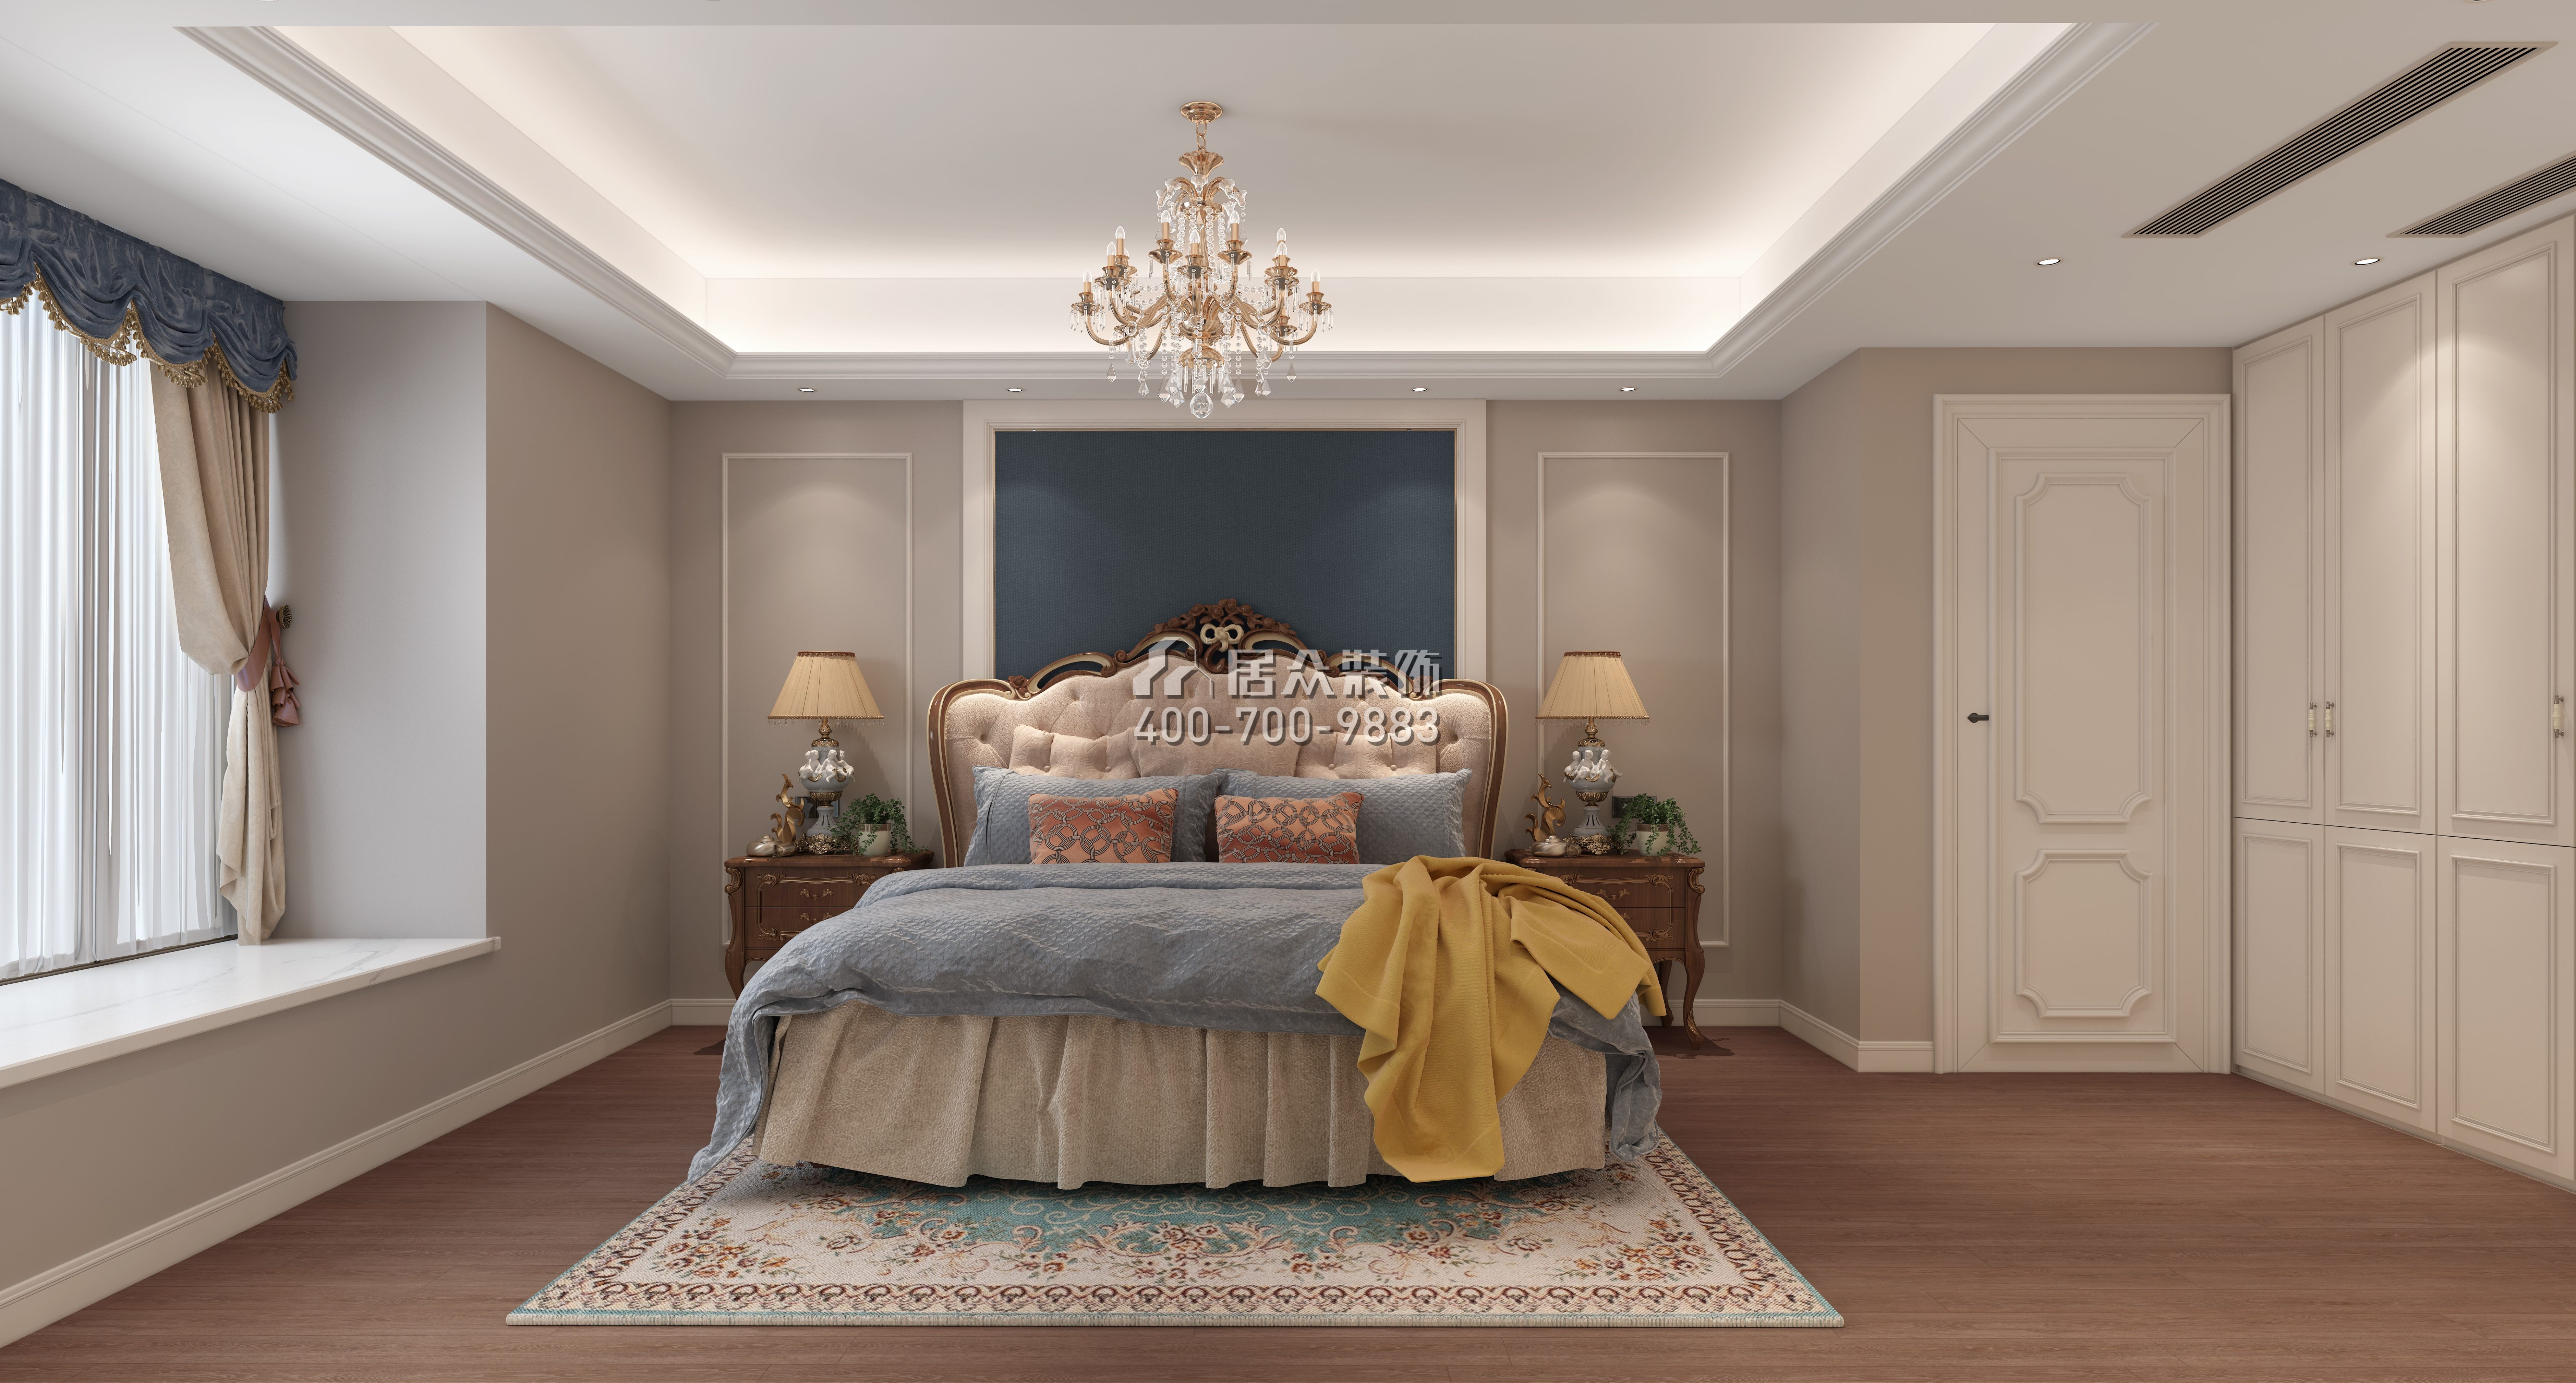 金水湾198平方米欧式风格平层户型卧室装修效果图